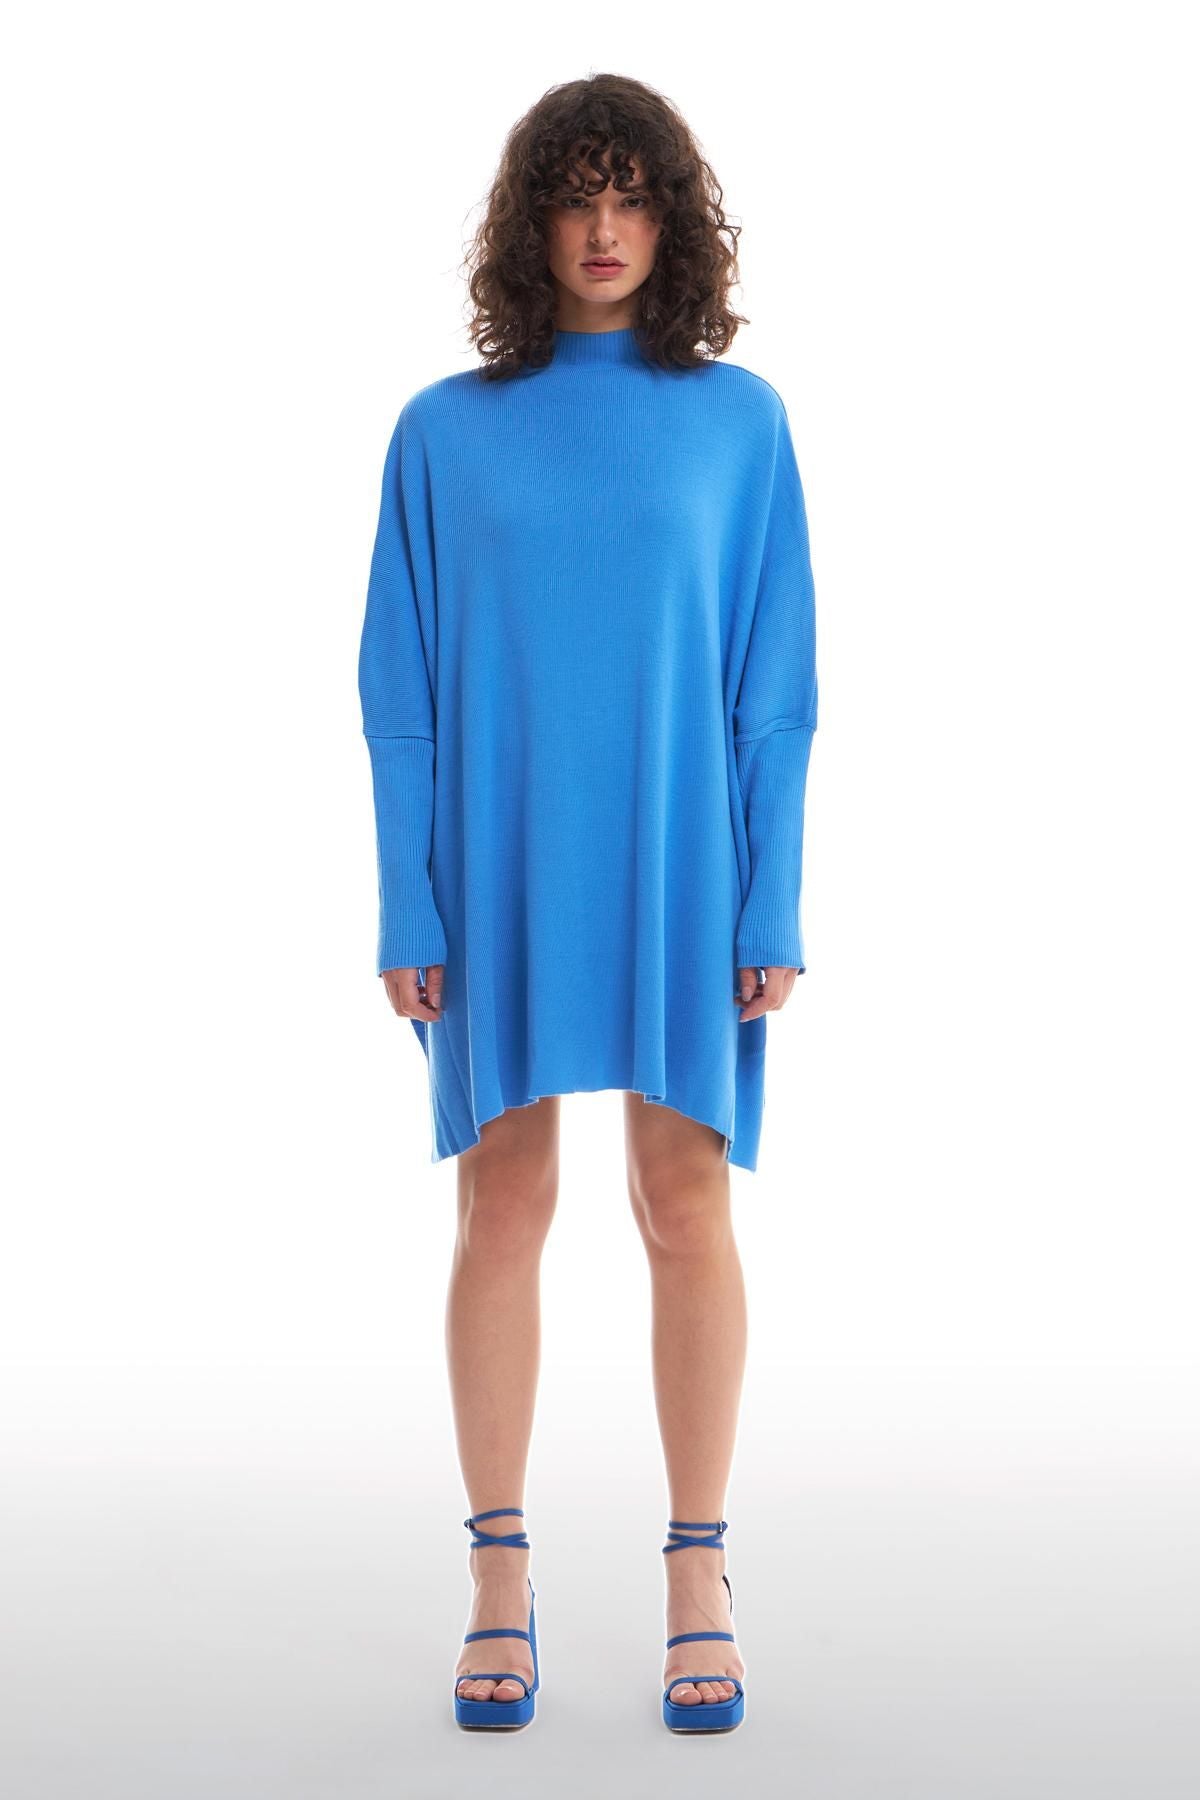 Half Turtleneck Oversize Sweater Blue